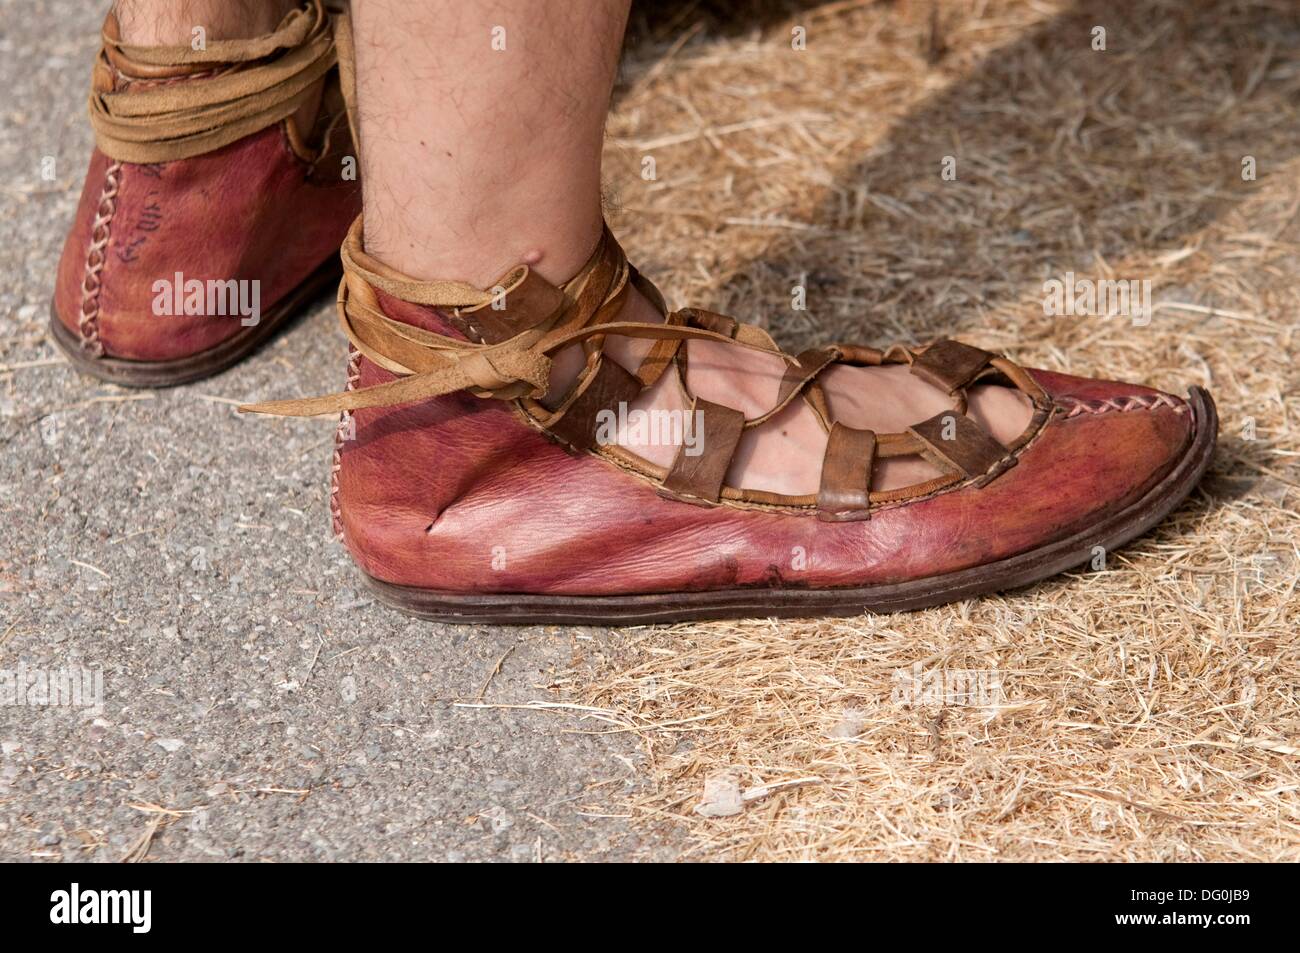 Roman shoes immagini e fotografie stock ad alta risoluzione - Alamy